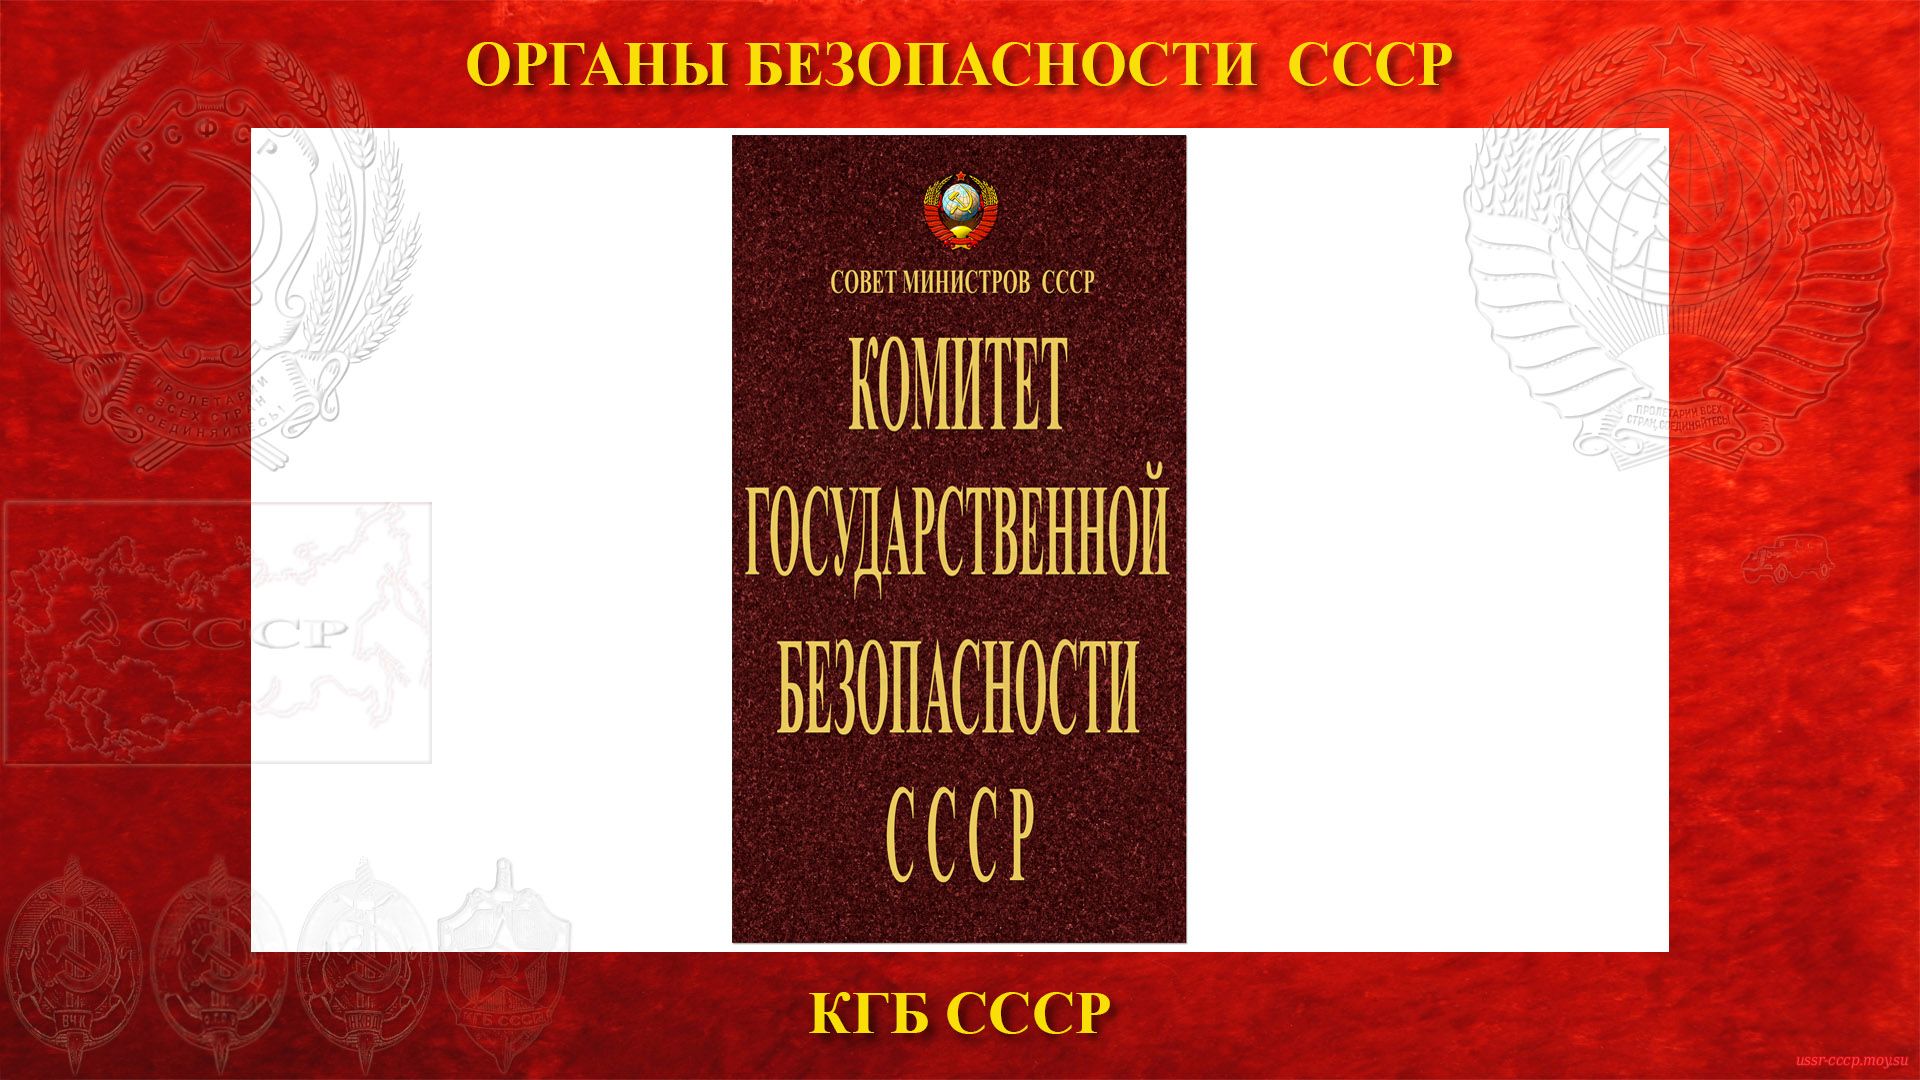 КГБ СССР — Комитет государственной безопасности CCCP (повествование)